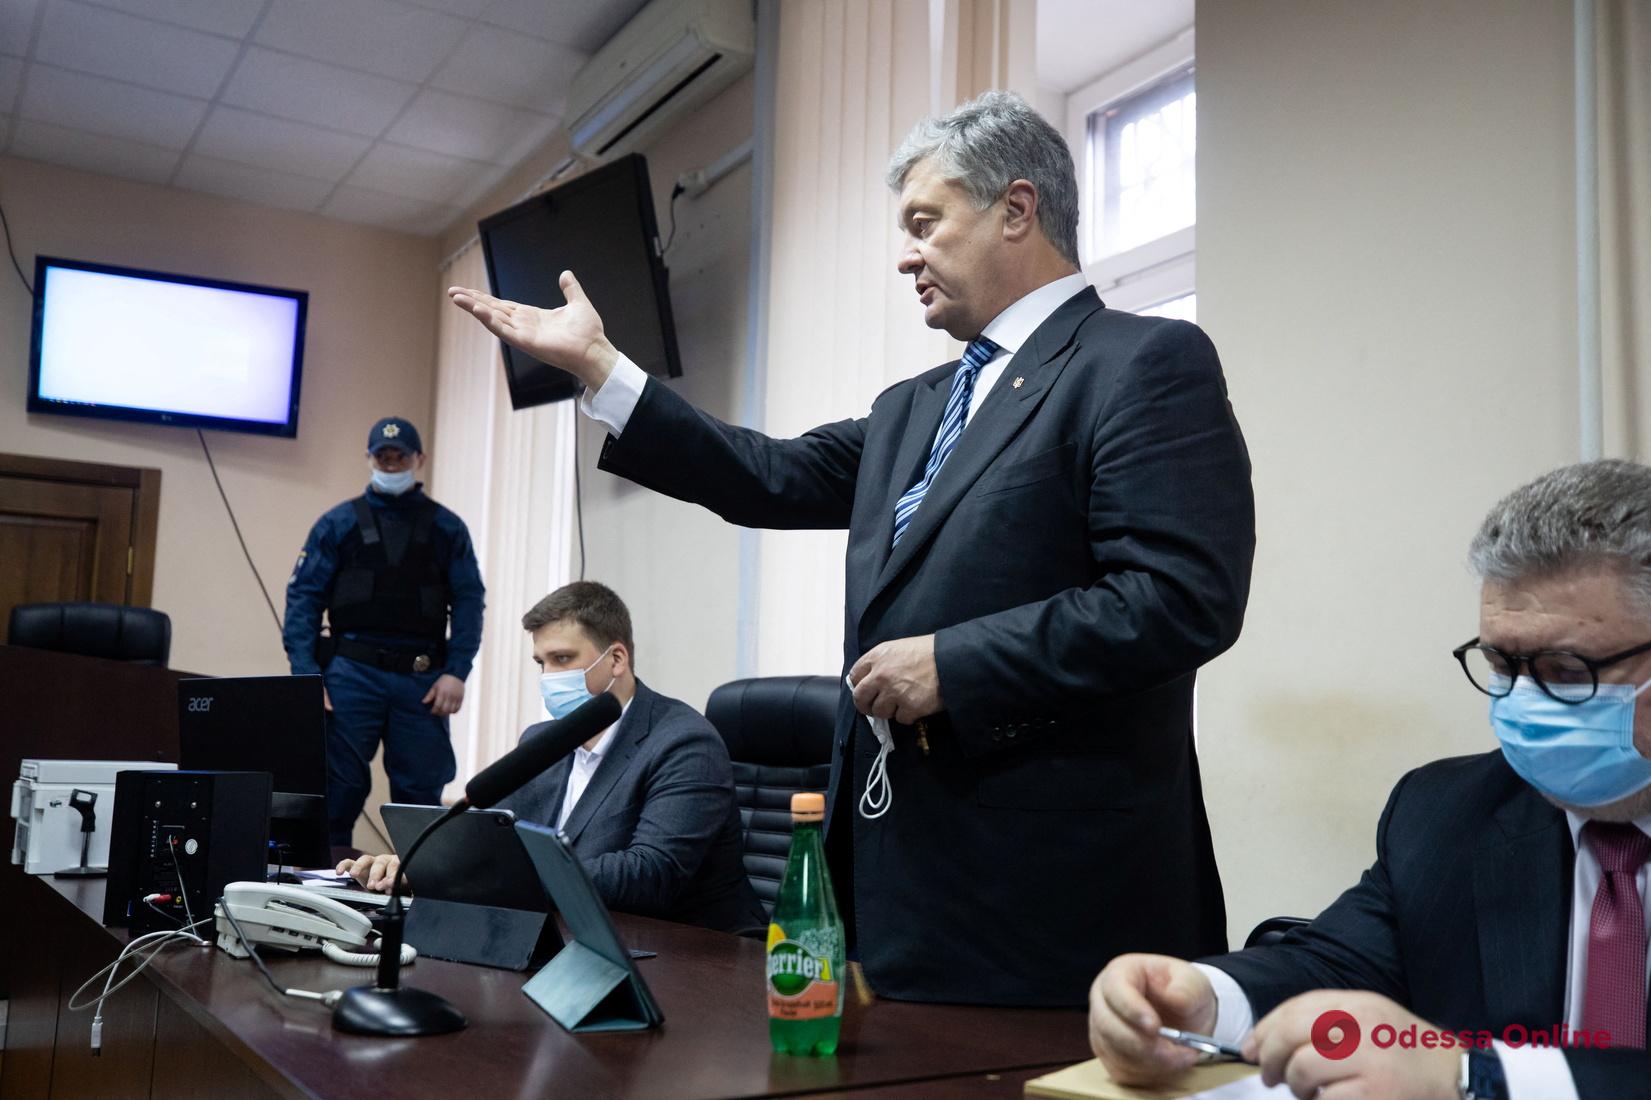 Дело Порошенко: после 4 часов в совещательной комнате судья перенес объявление решения